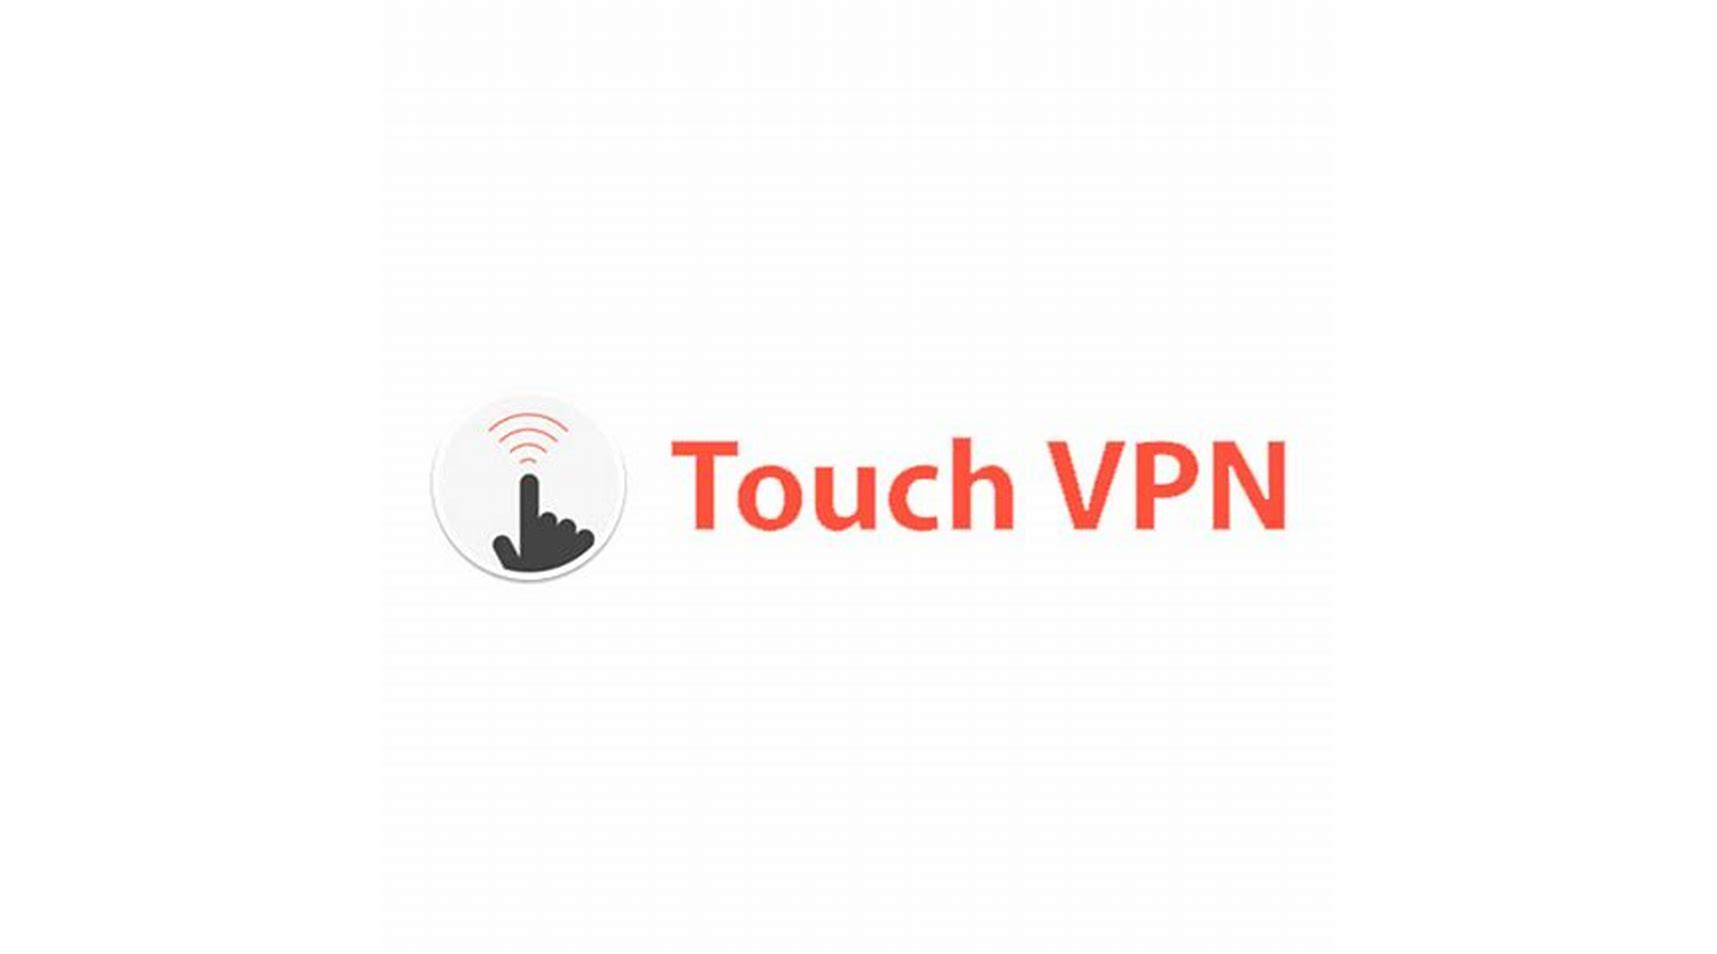 TouchVPN logo